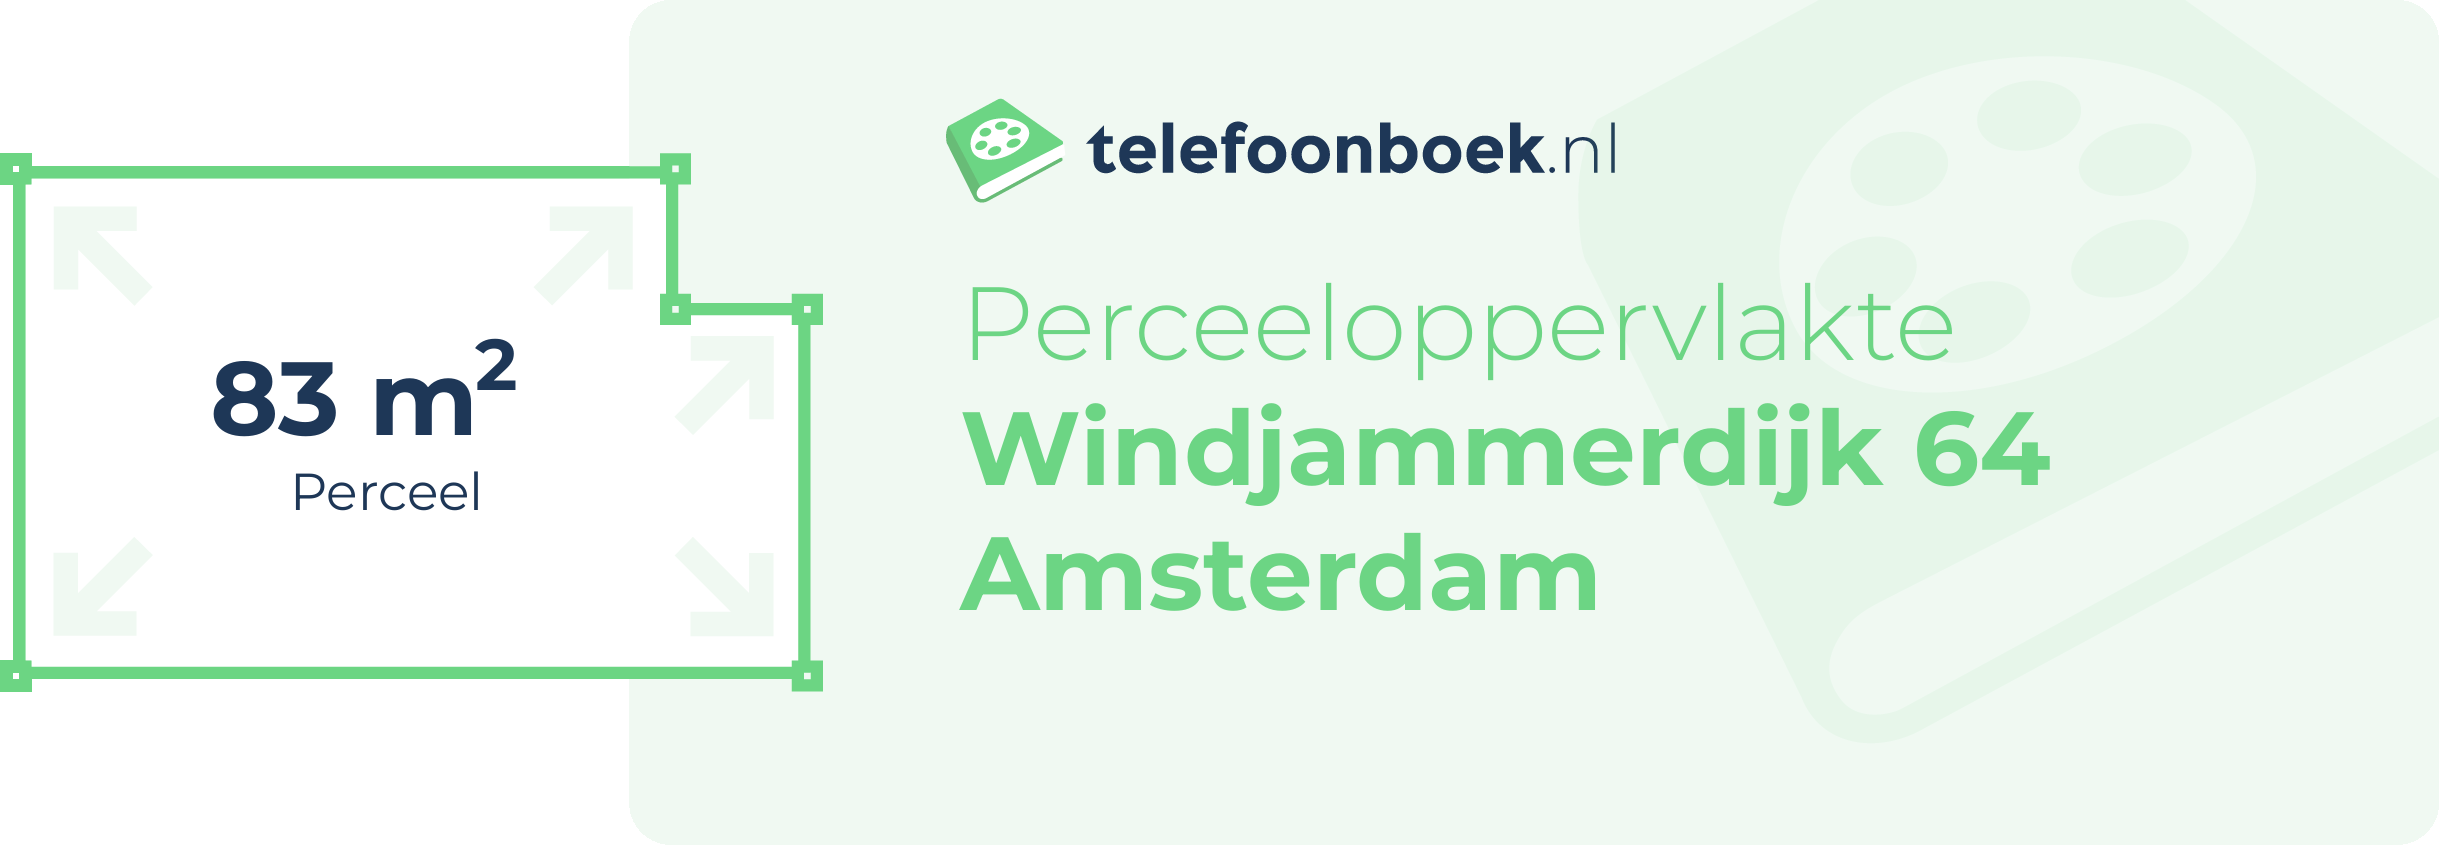 Perceeloppervlakte Windjammerdijk 64 Amsterdam